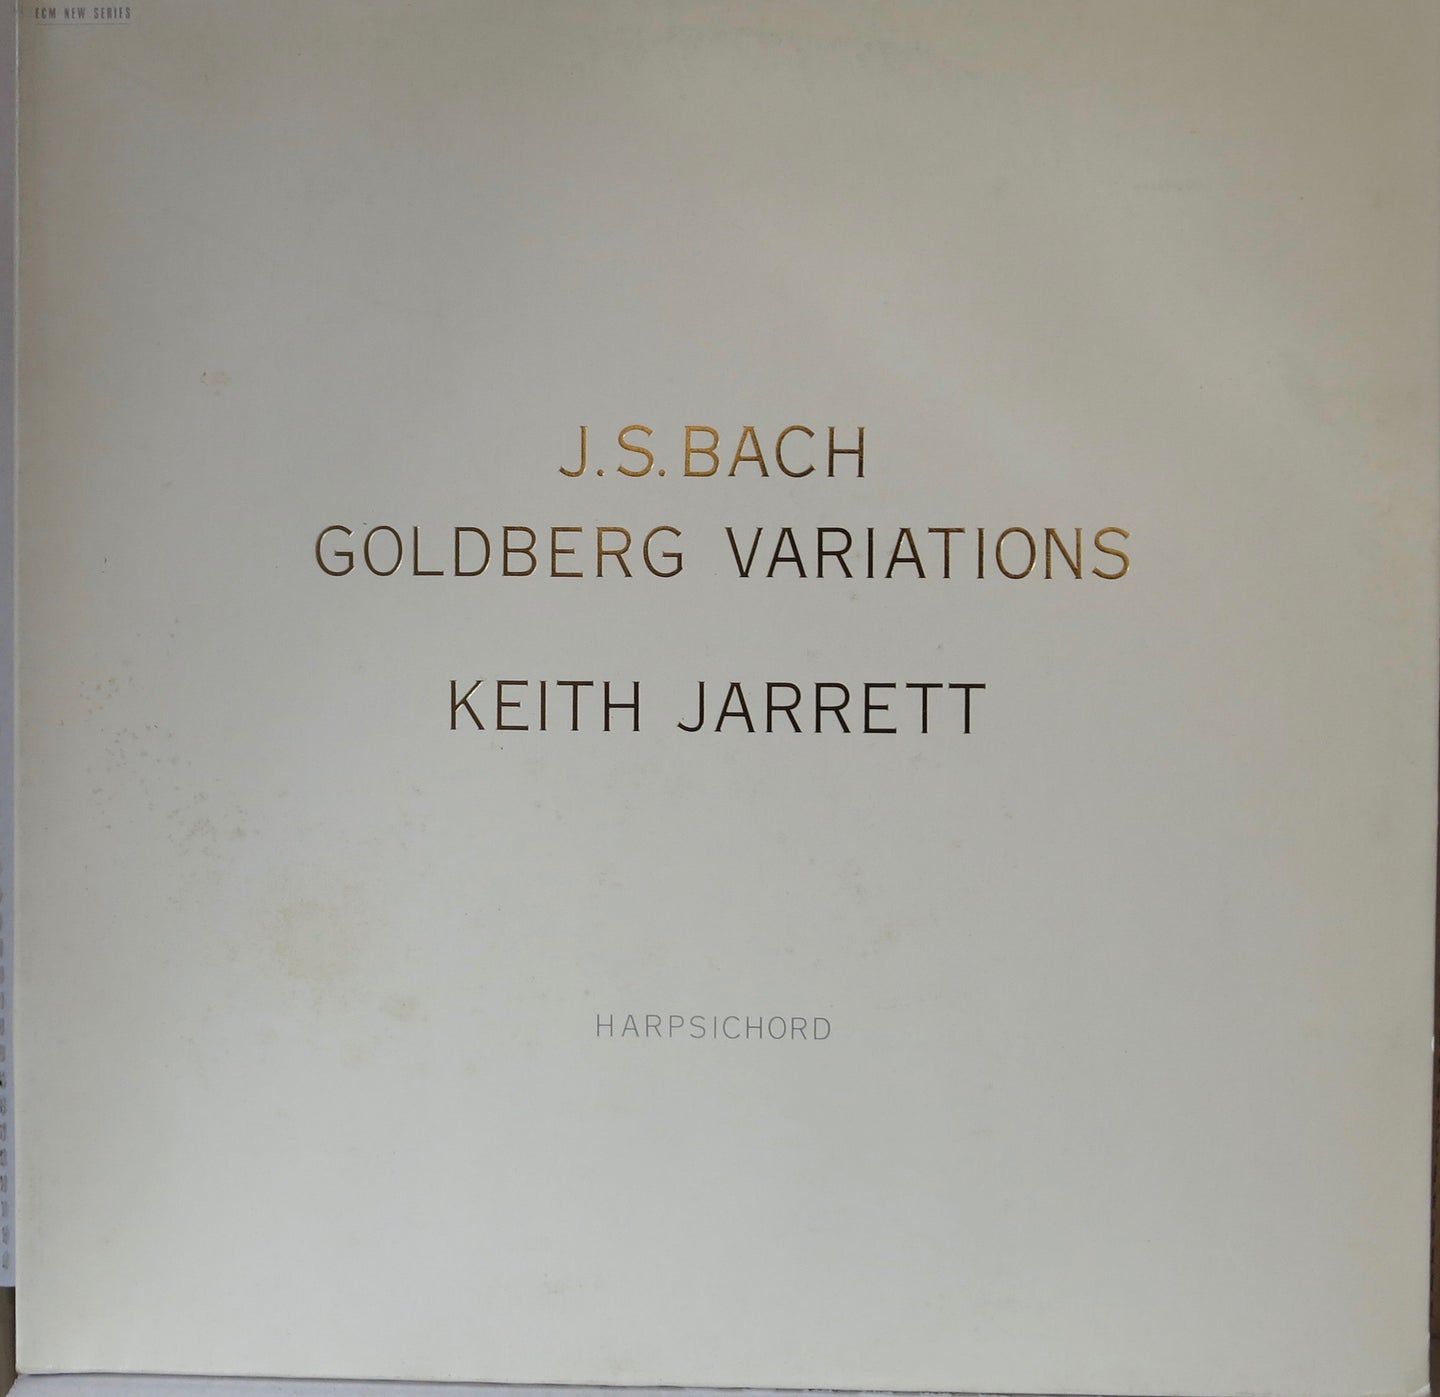 Keith Jarrett - J.S. Bach Goldberg Variations - ECM